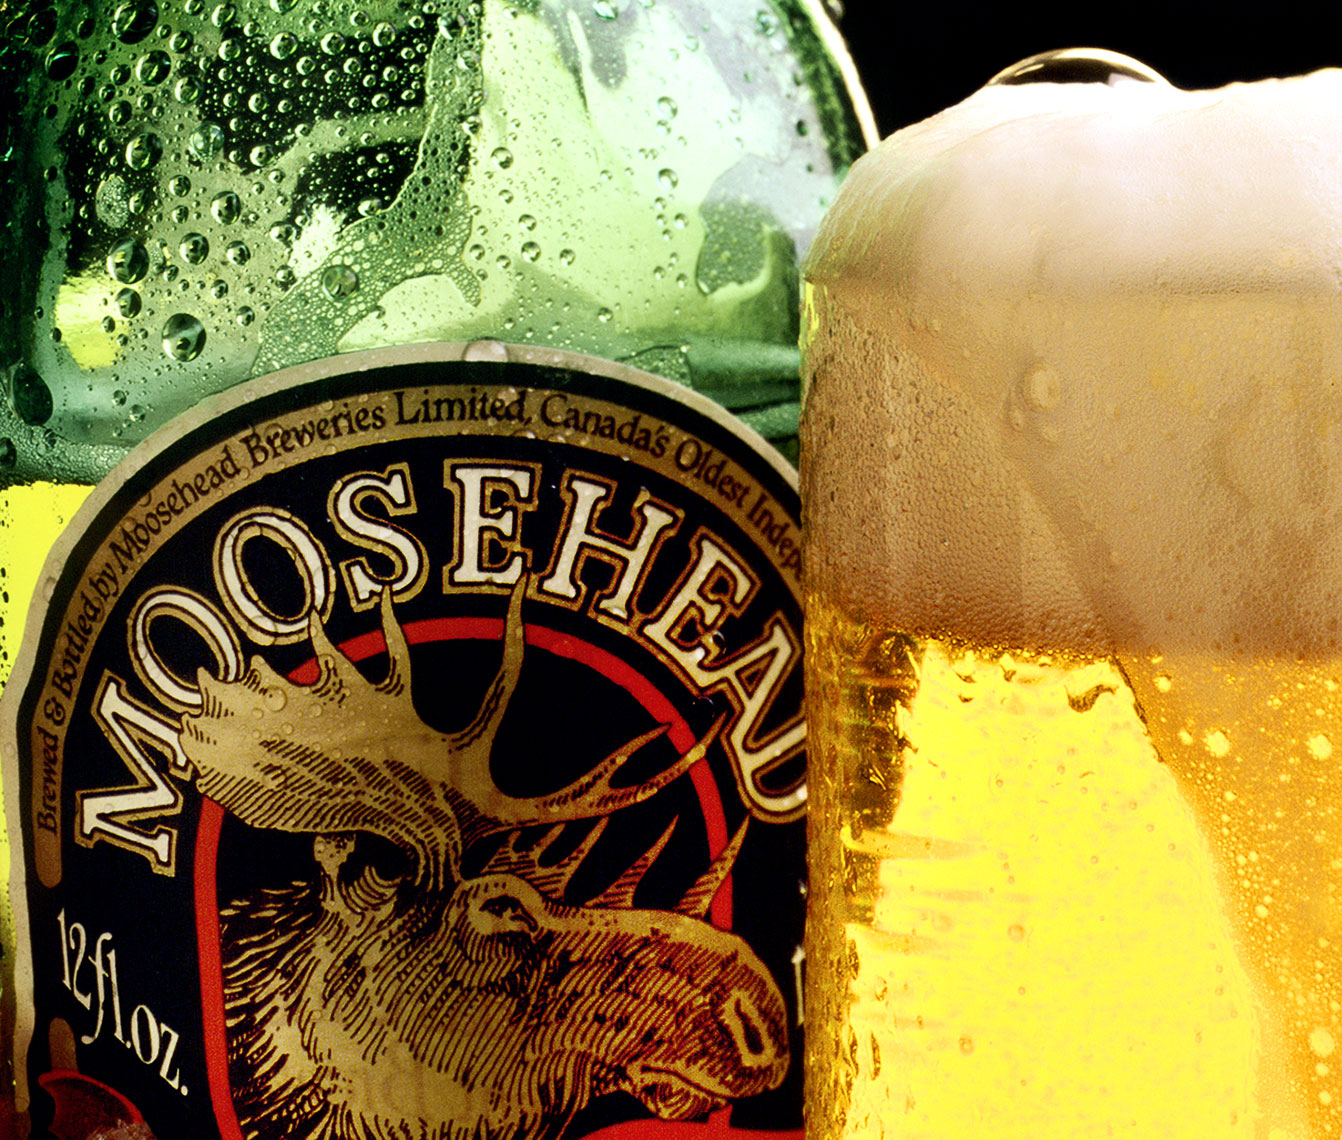 Moose-Head-Beer